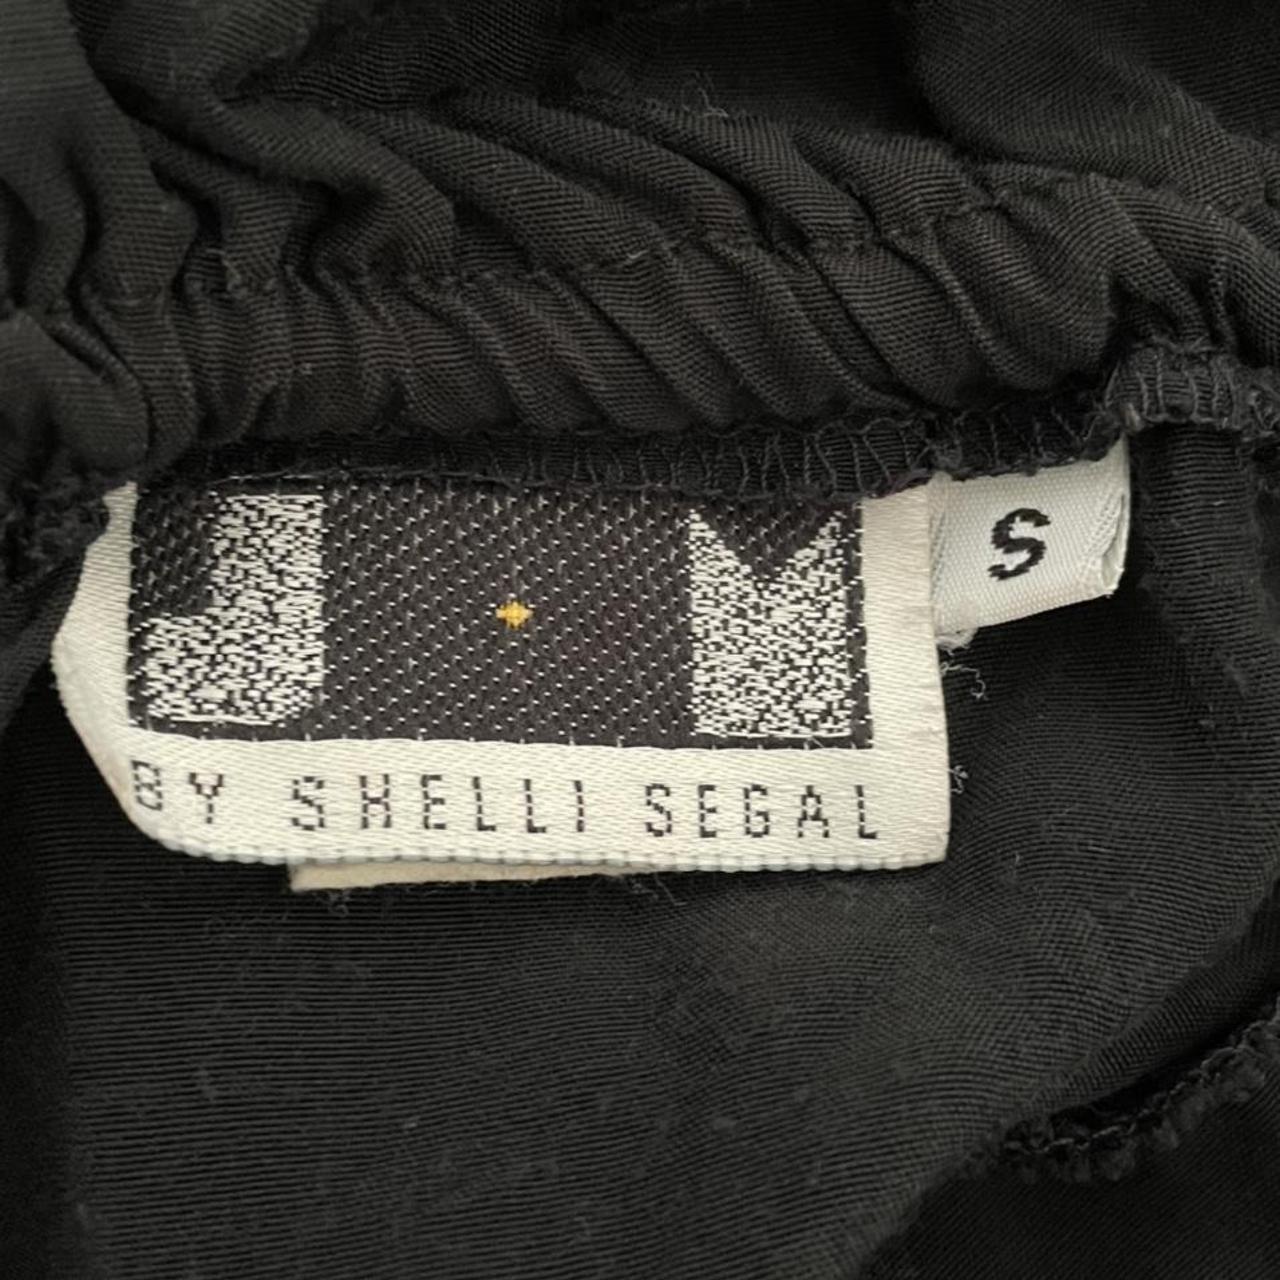 Laundry by Shelli Segal Women's Black Skirt (3)